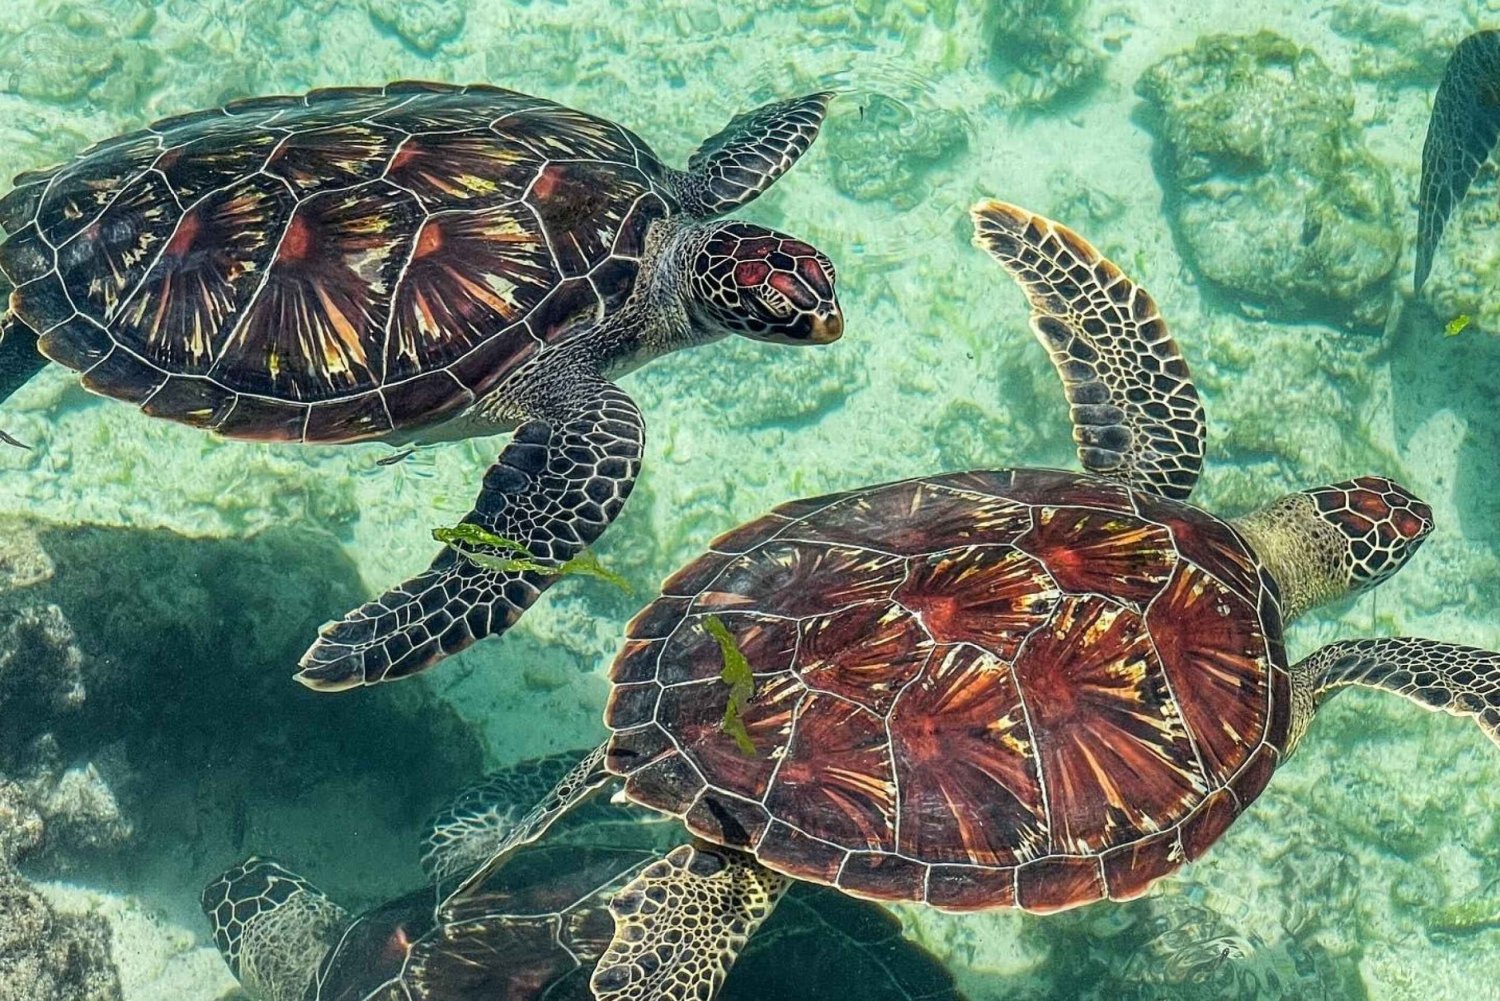 Sansibar: Schwimmen mit Schildkröten Tour